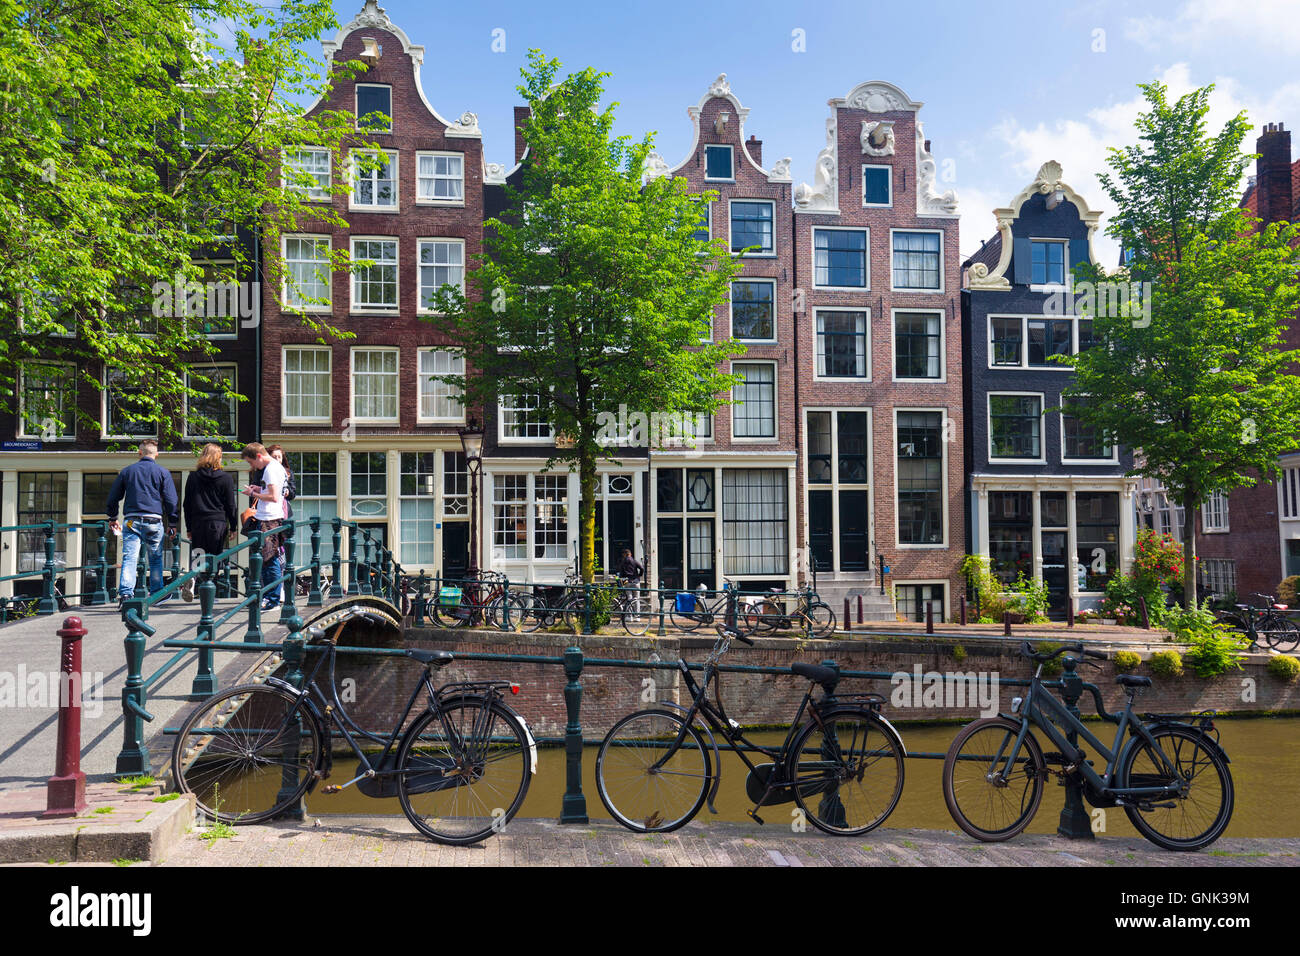 Fahrräder und Canalside Giebel Häuser - holländische Giebel - Milchmädchen Brücke Melkmeisjesbrug auf Brouwersgracht in Amsterdam, Holland Stockfoto